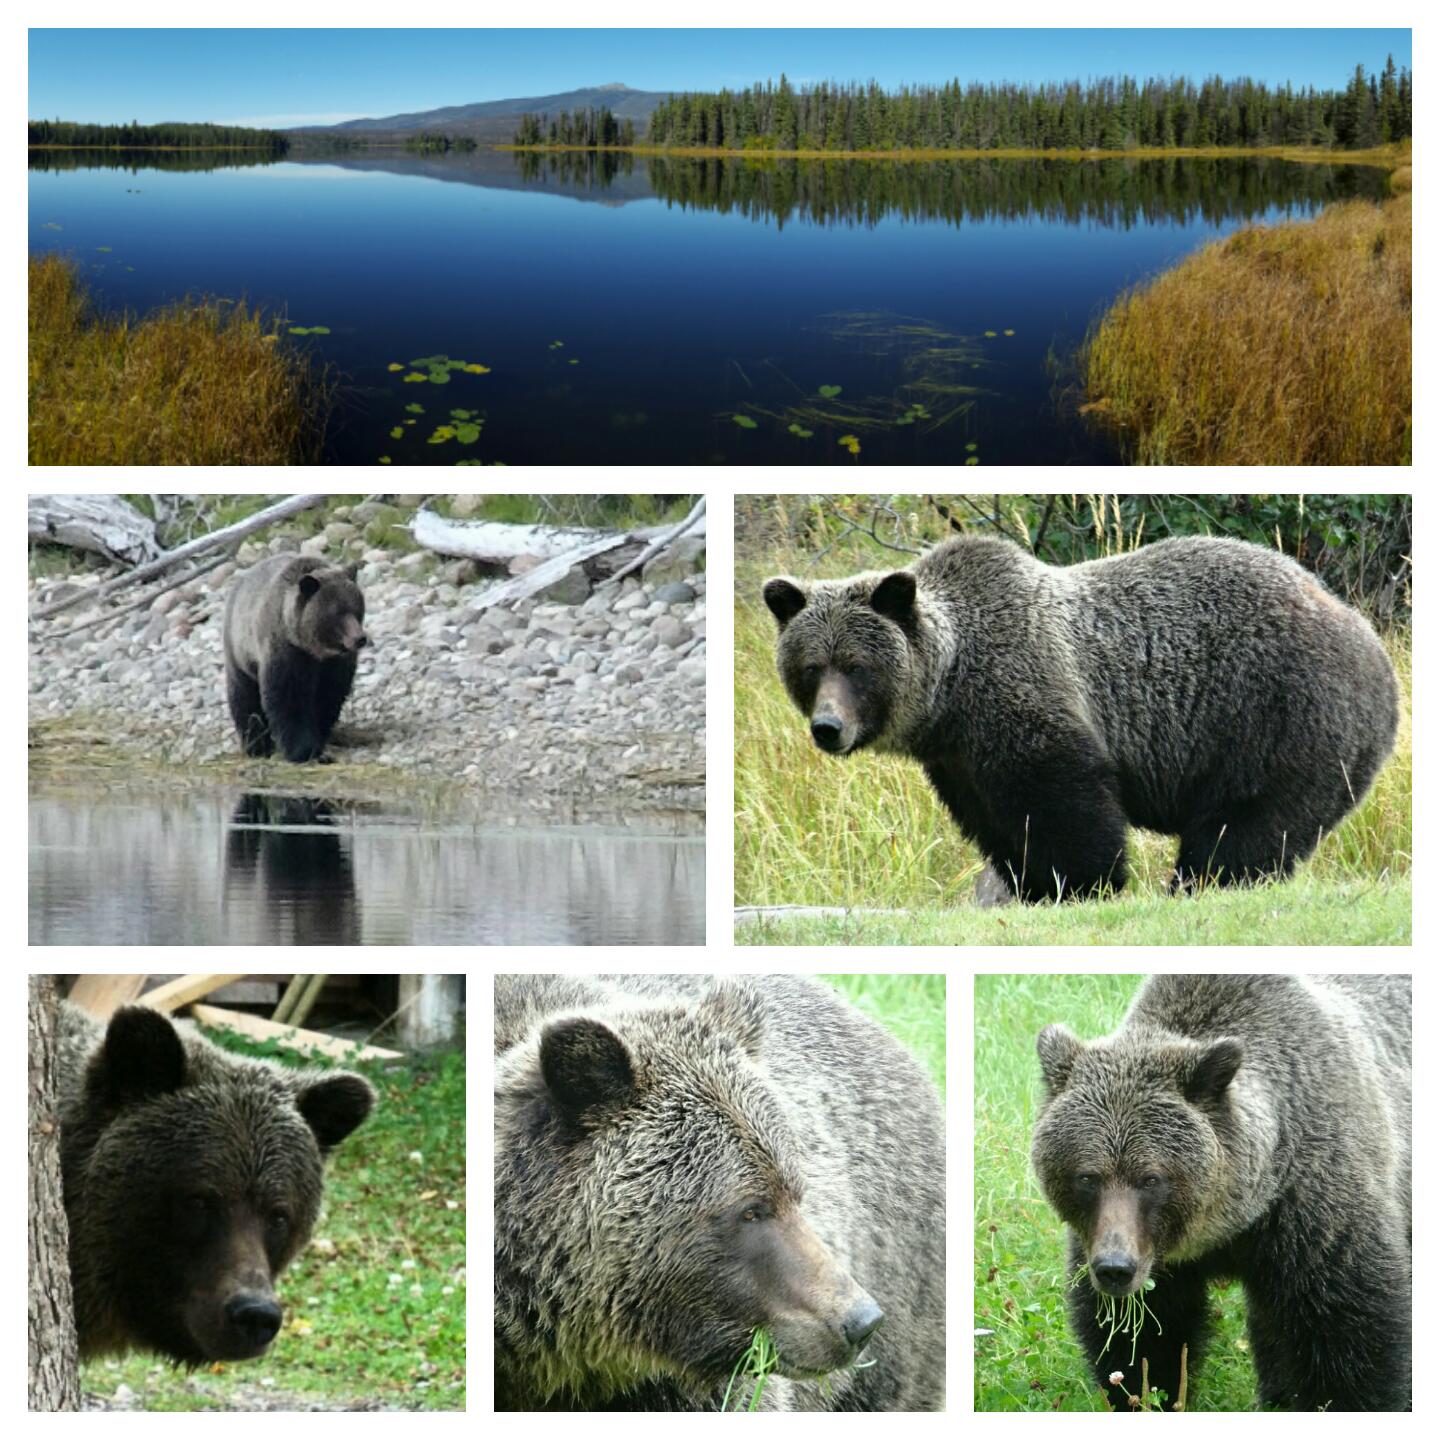 Woche 4: 2016-09-25, Grizzly in der kanadischen Wildniss getroffen, 5 Tage offline 